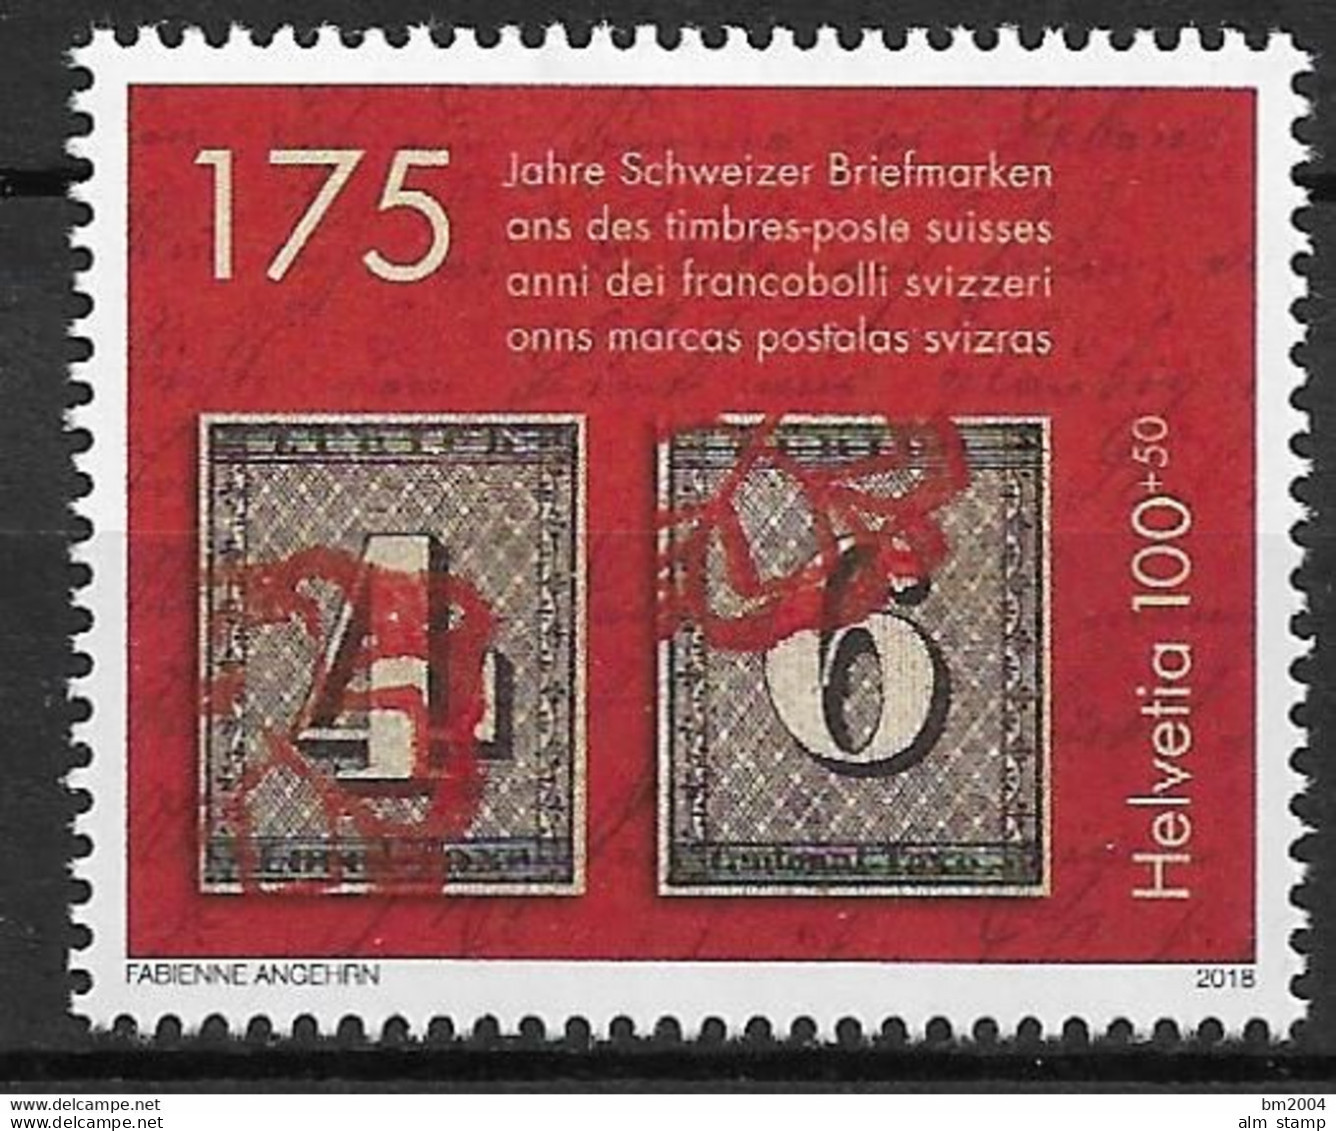 2018 Schweiz Mi. 2531 **MNH   175 Jahre Schweizer Briefmarken - Nuovi